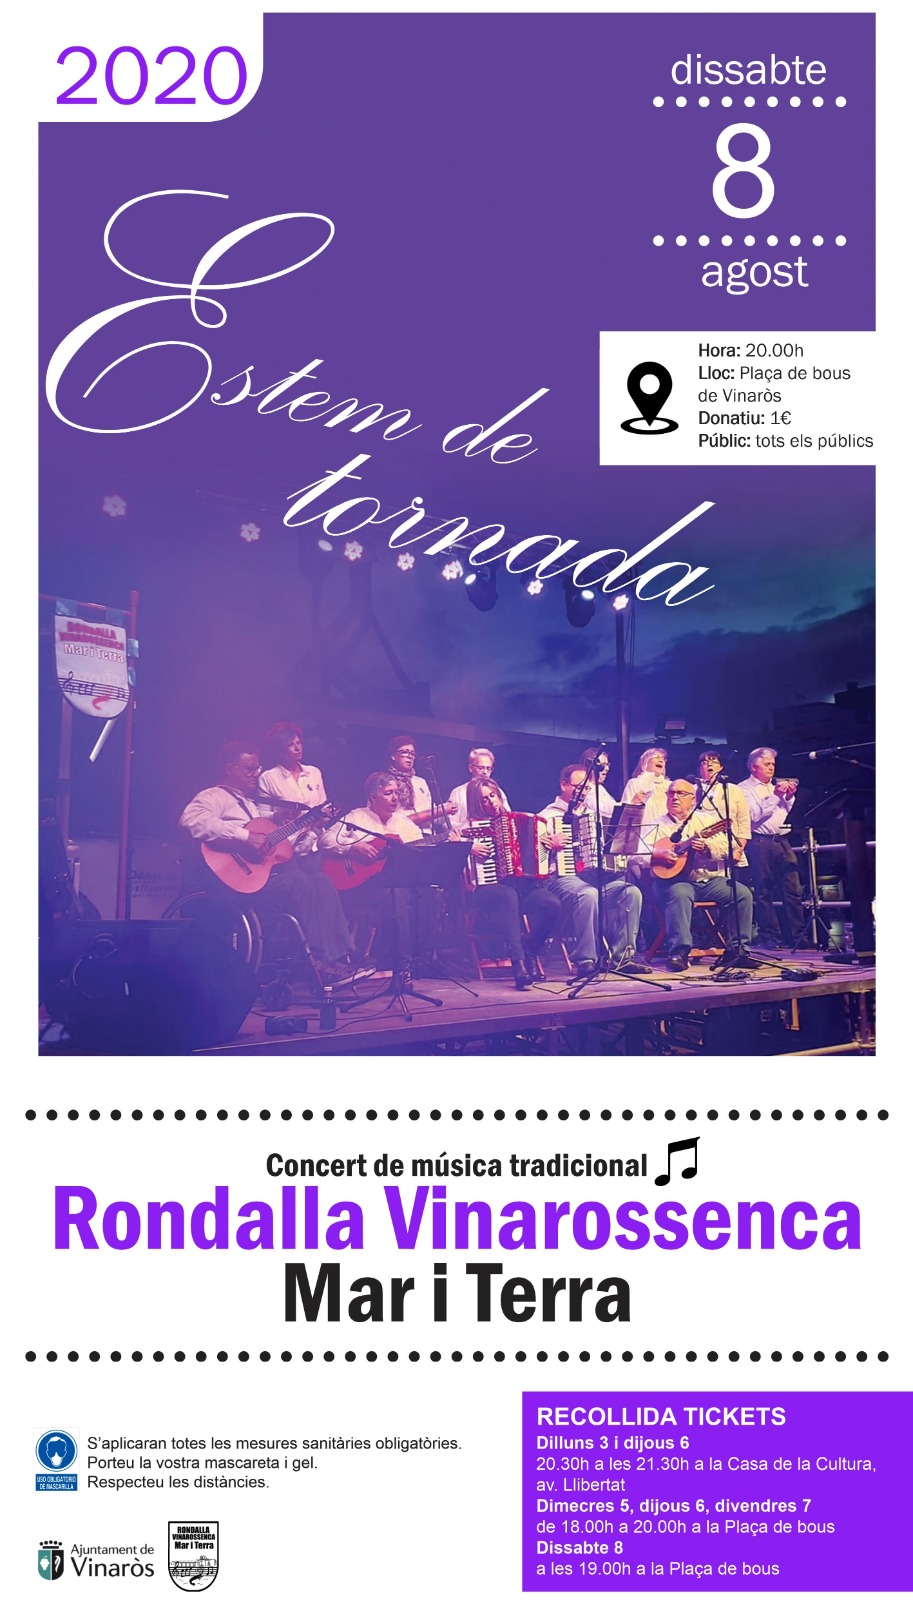 Concert de música tradicional de la Rondalla Vinarossenca Mar i Terra